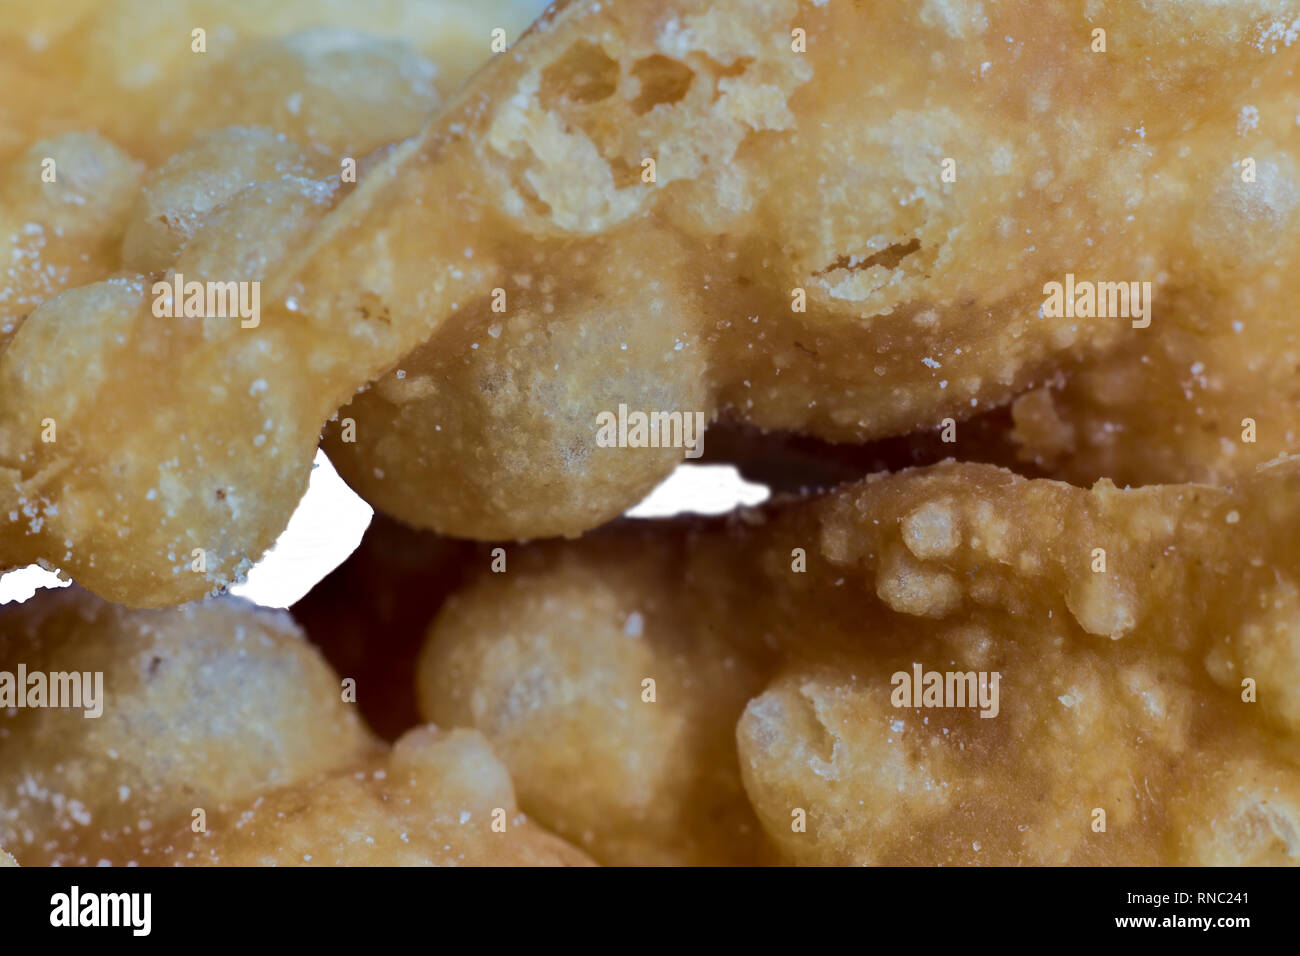 Macrophoto. Europäischen dessert Angel Wings. Interessante Textur von frittierte Teig Streifen mit mit einem Loch in der Mitte. Über Gebäck, Süßigkeiten. Stockfoto